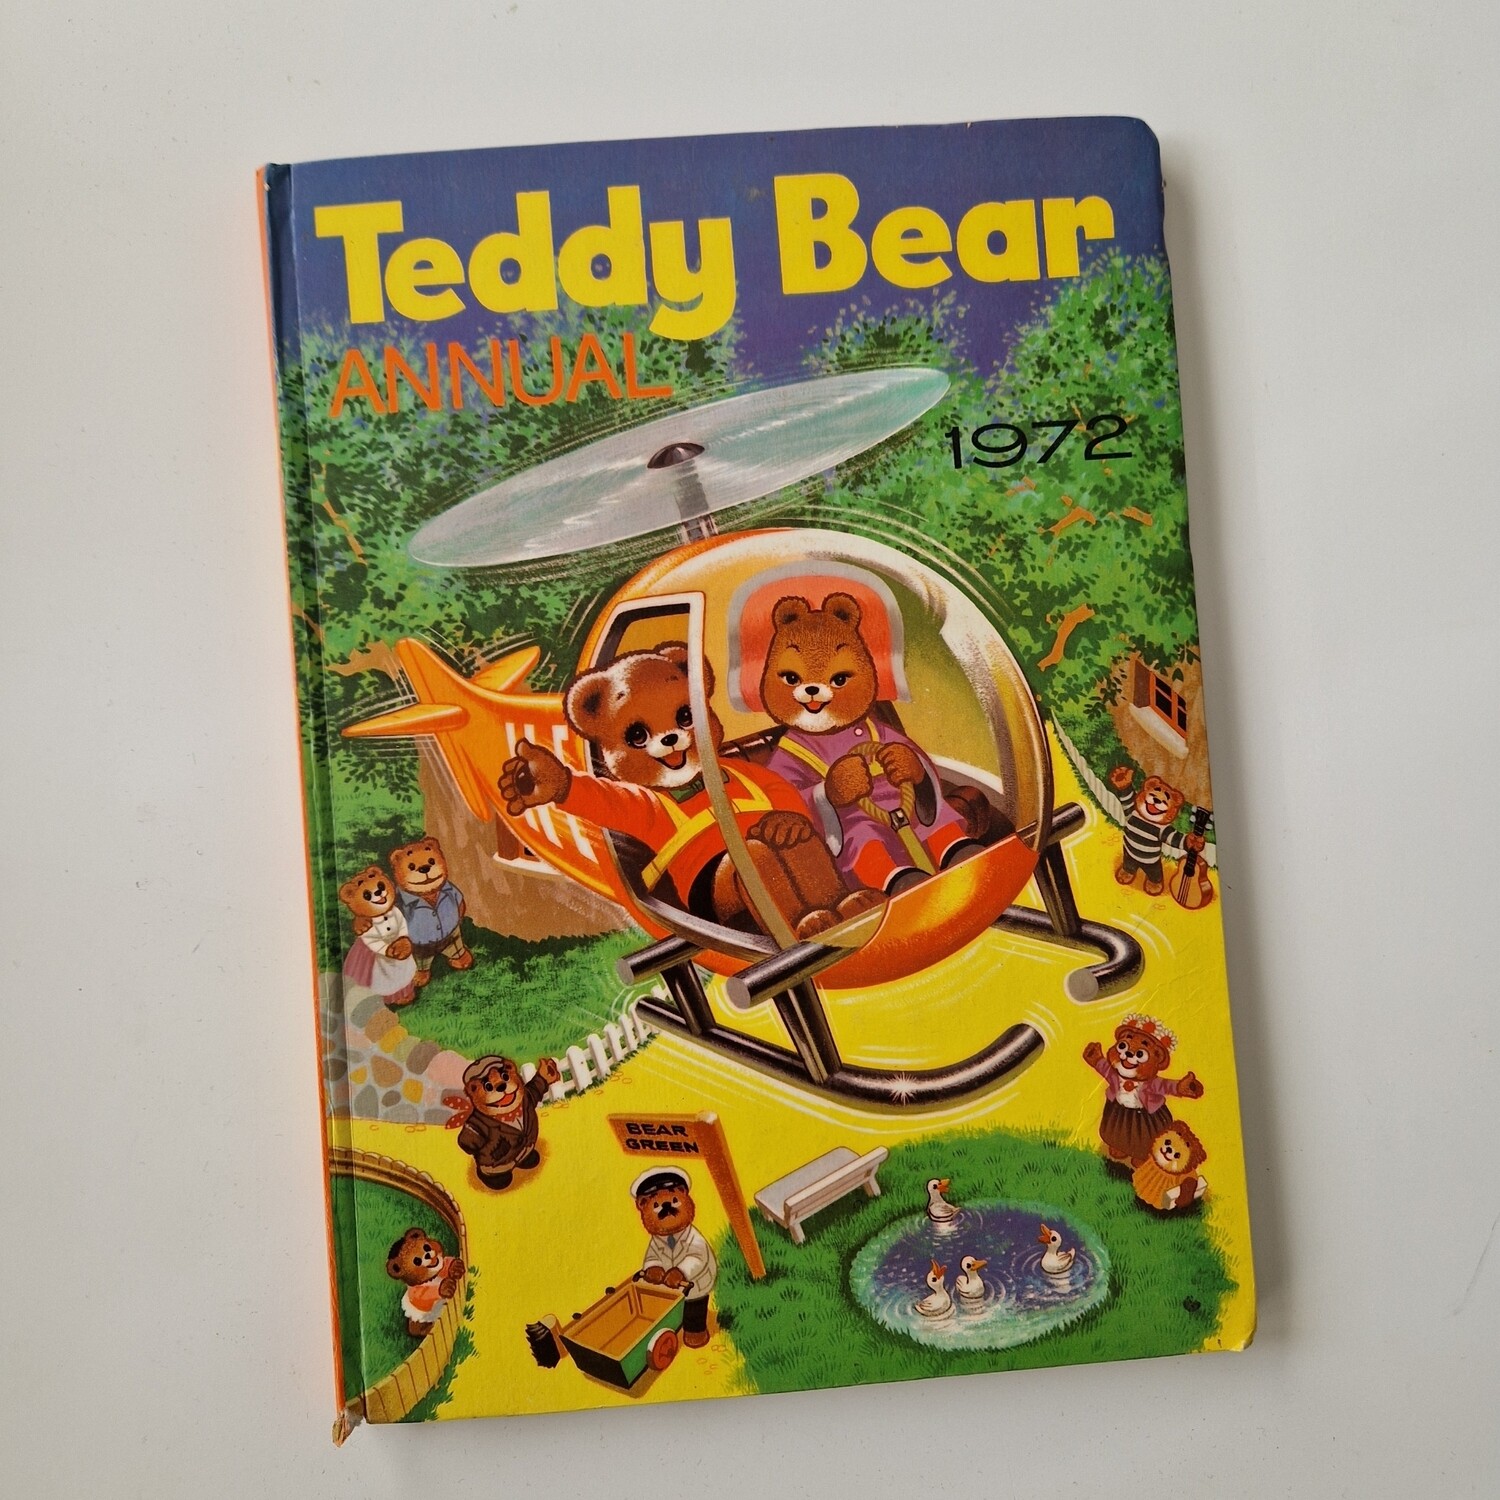 Teddy Bear Annual 1972